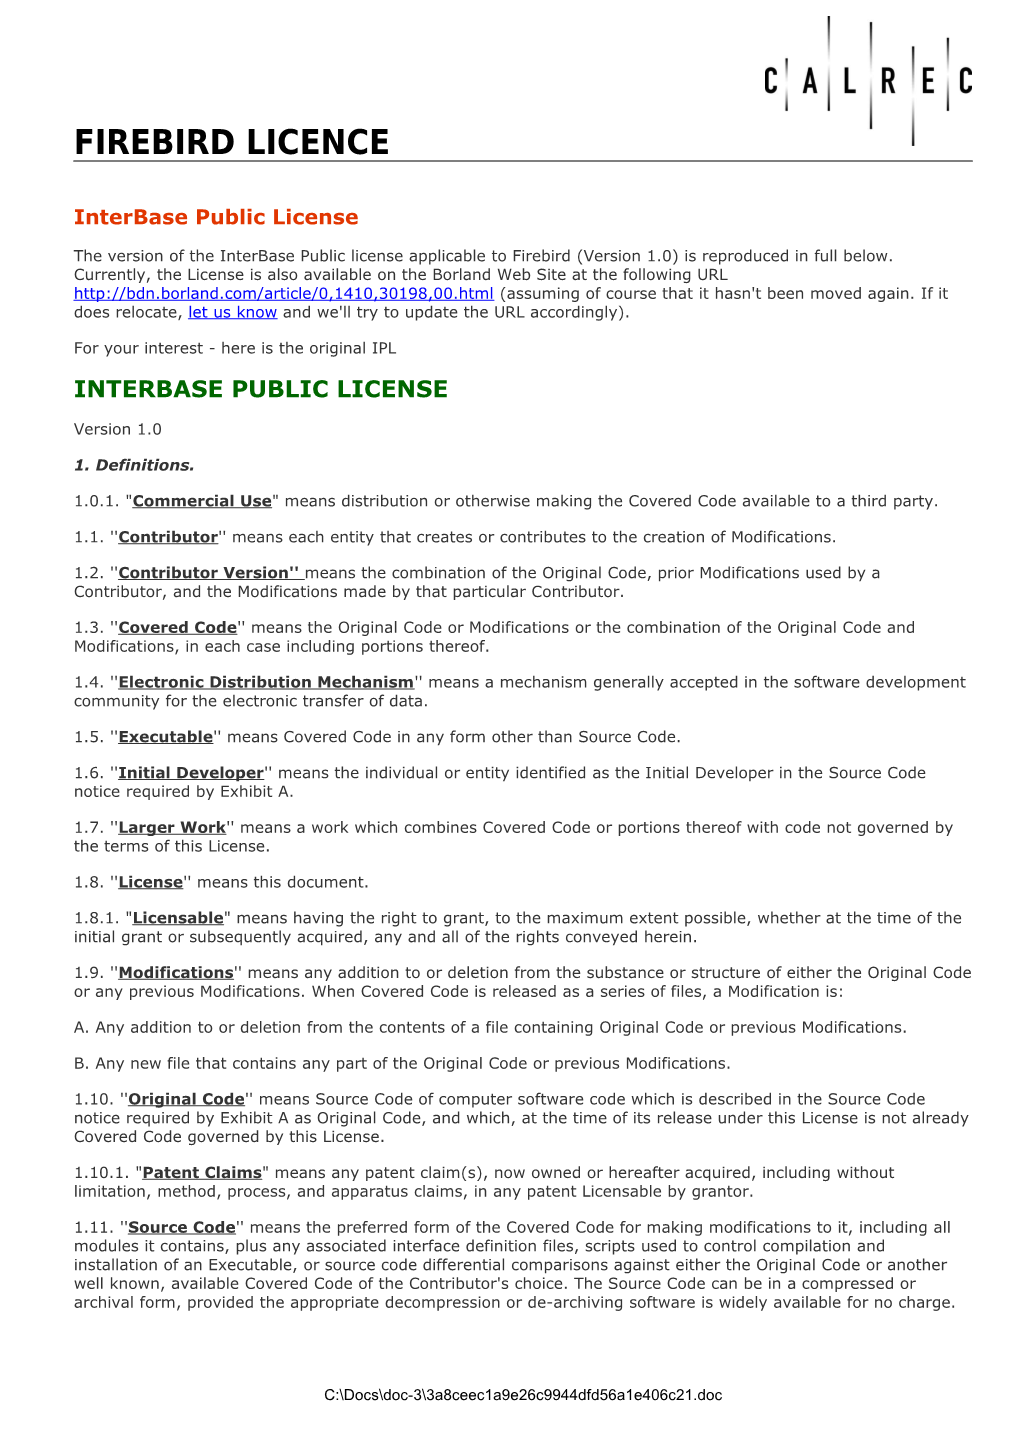 Interbase Public License